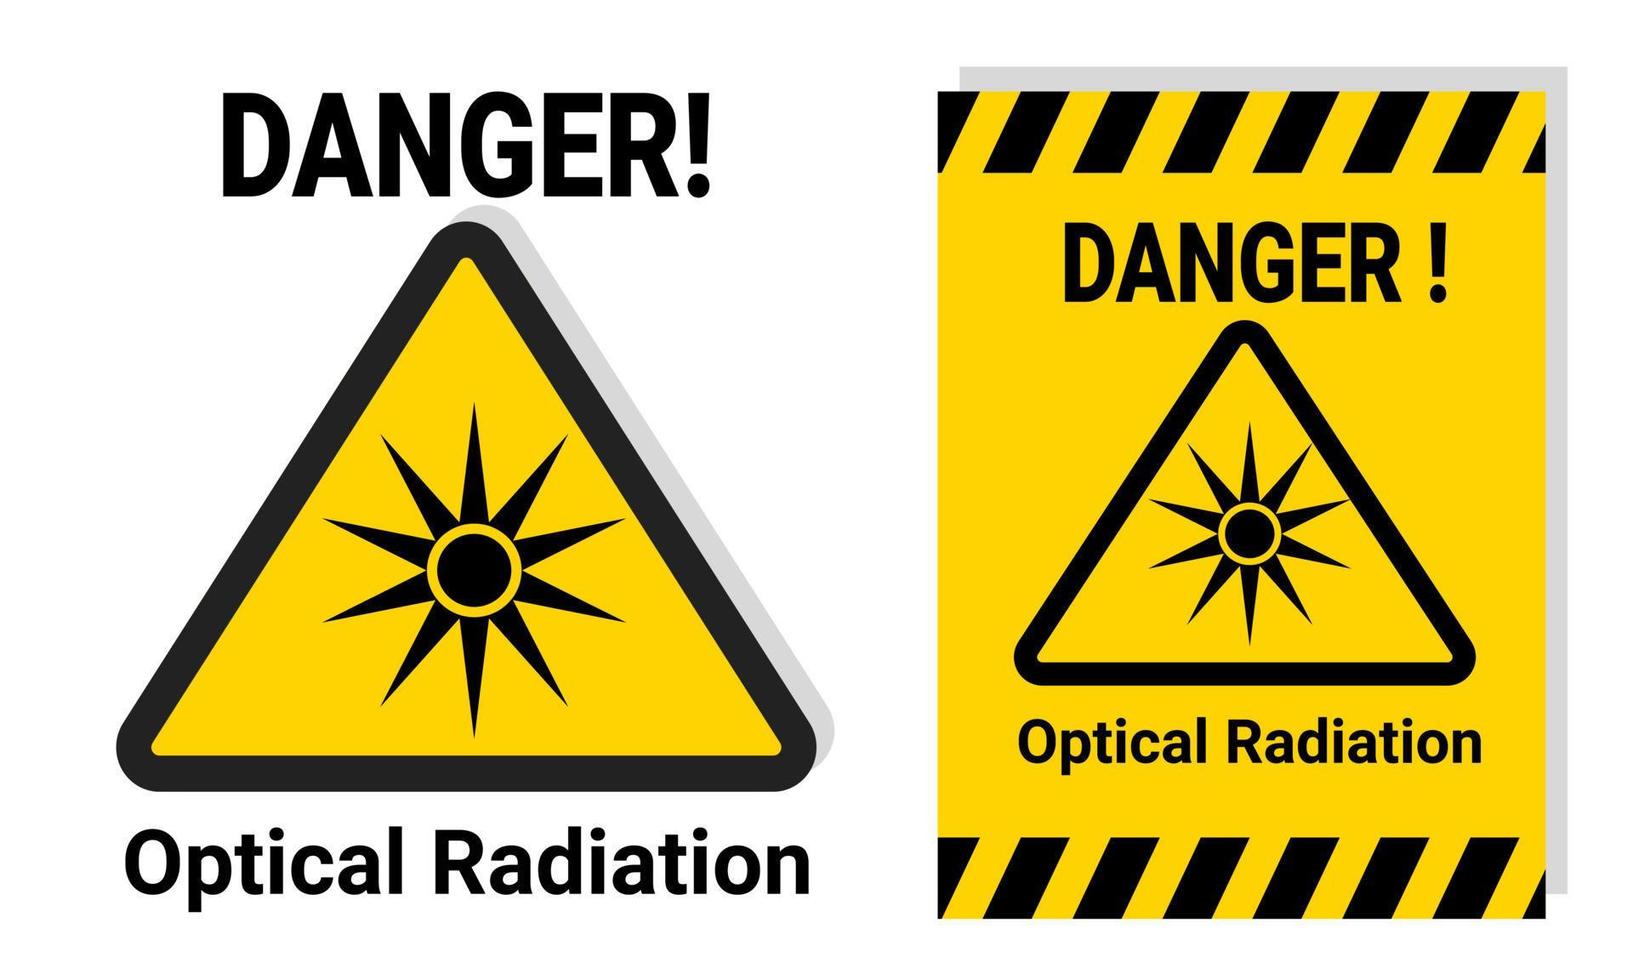 Señal de advertencia de peligro de radiación óptica para seguridad laboral o de laboratorio con etiqueta adhesiva amarilla imprimible para notificación. Ilustración de vector de icono de peligro